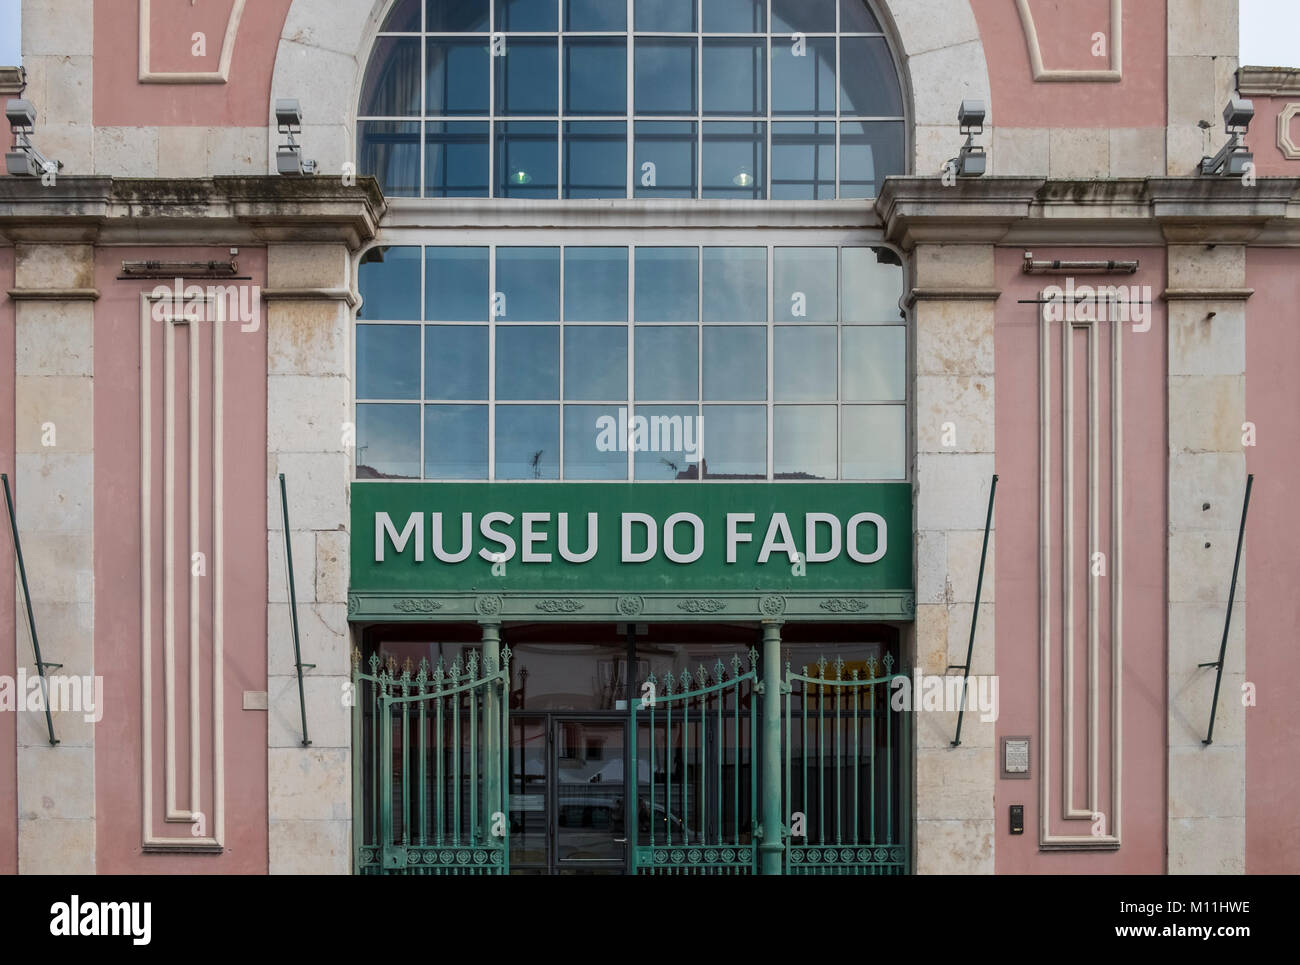 Entrance to the Museu do Fado building, Largo Chafariz de Dentro 1, 1100-139 Lisboa, Portugal Stock Photo